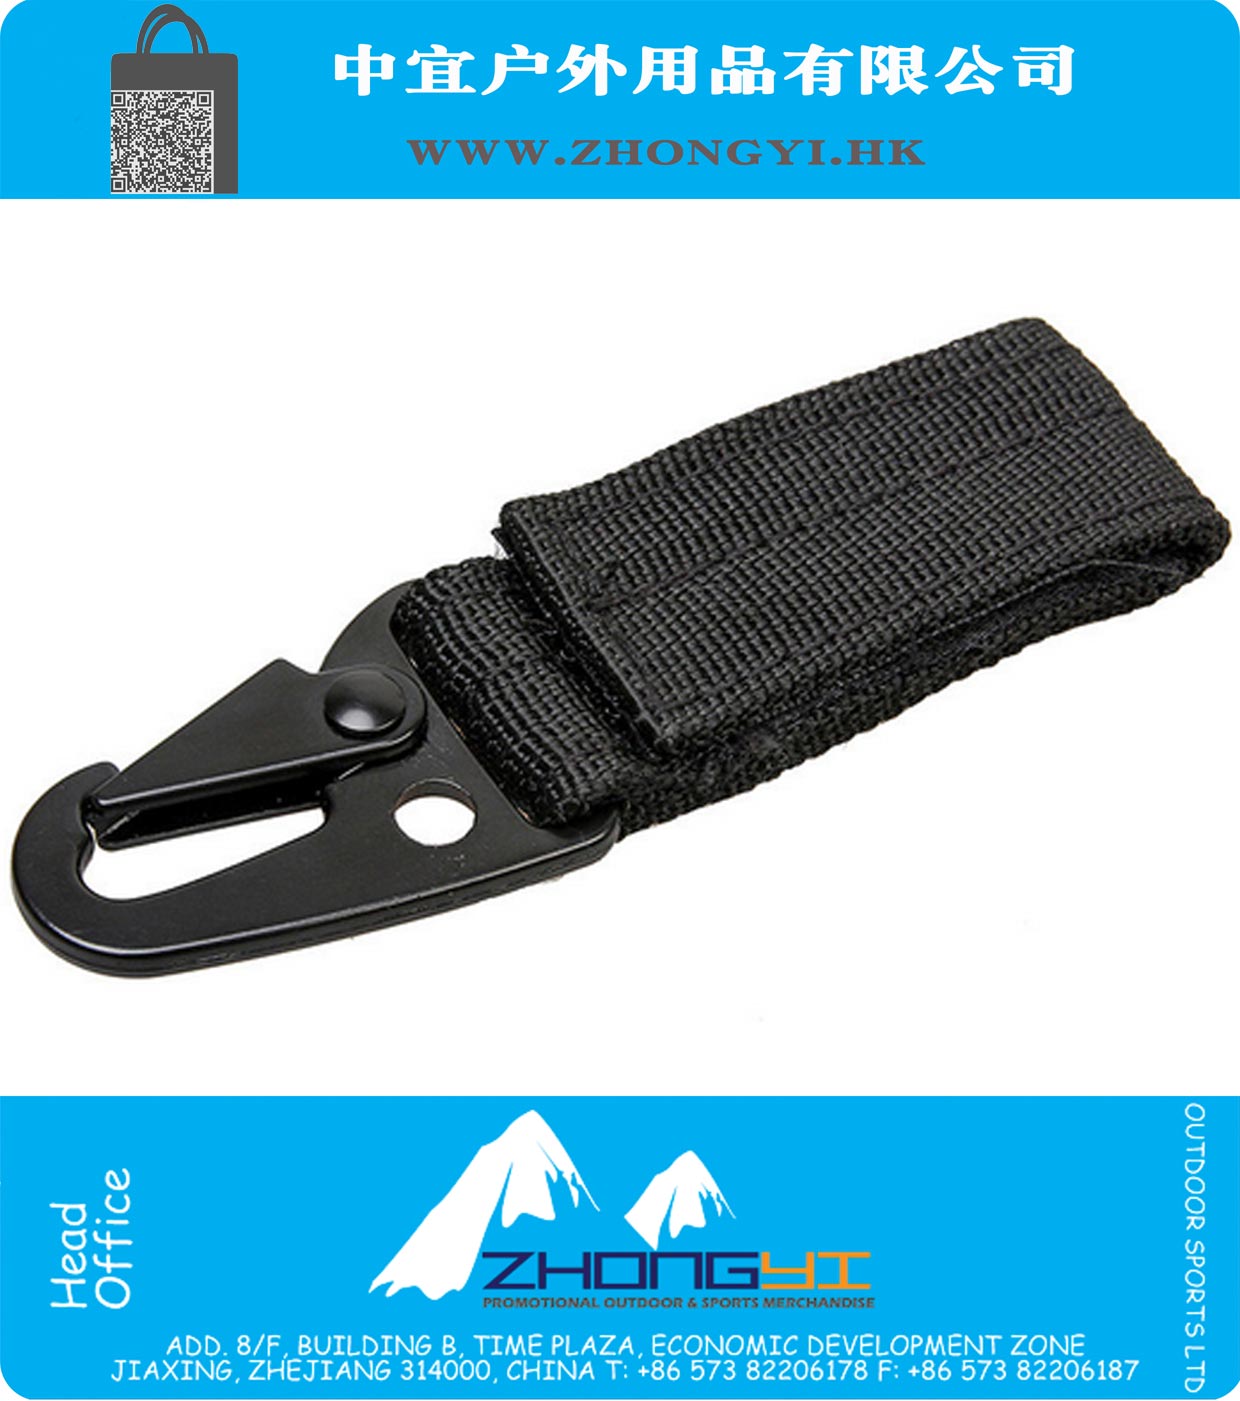 Molle Sac pochette Gilet ceinture Bracelet Boucle Crochet en nylon durable Keychain Baudrier Buckles Kits Travelling Outils poche